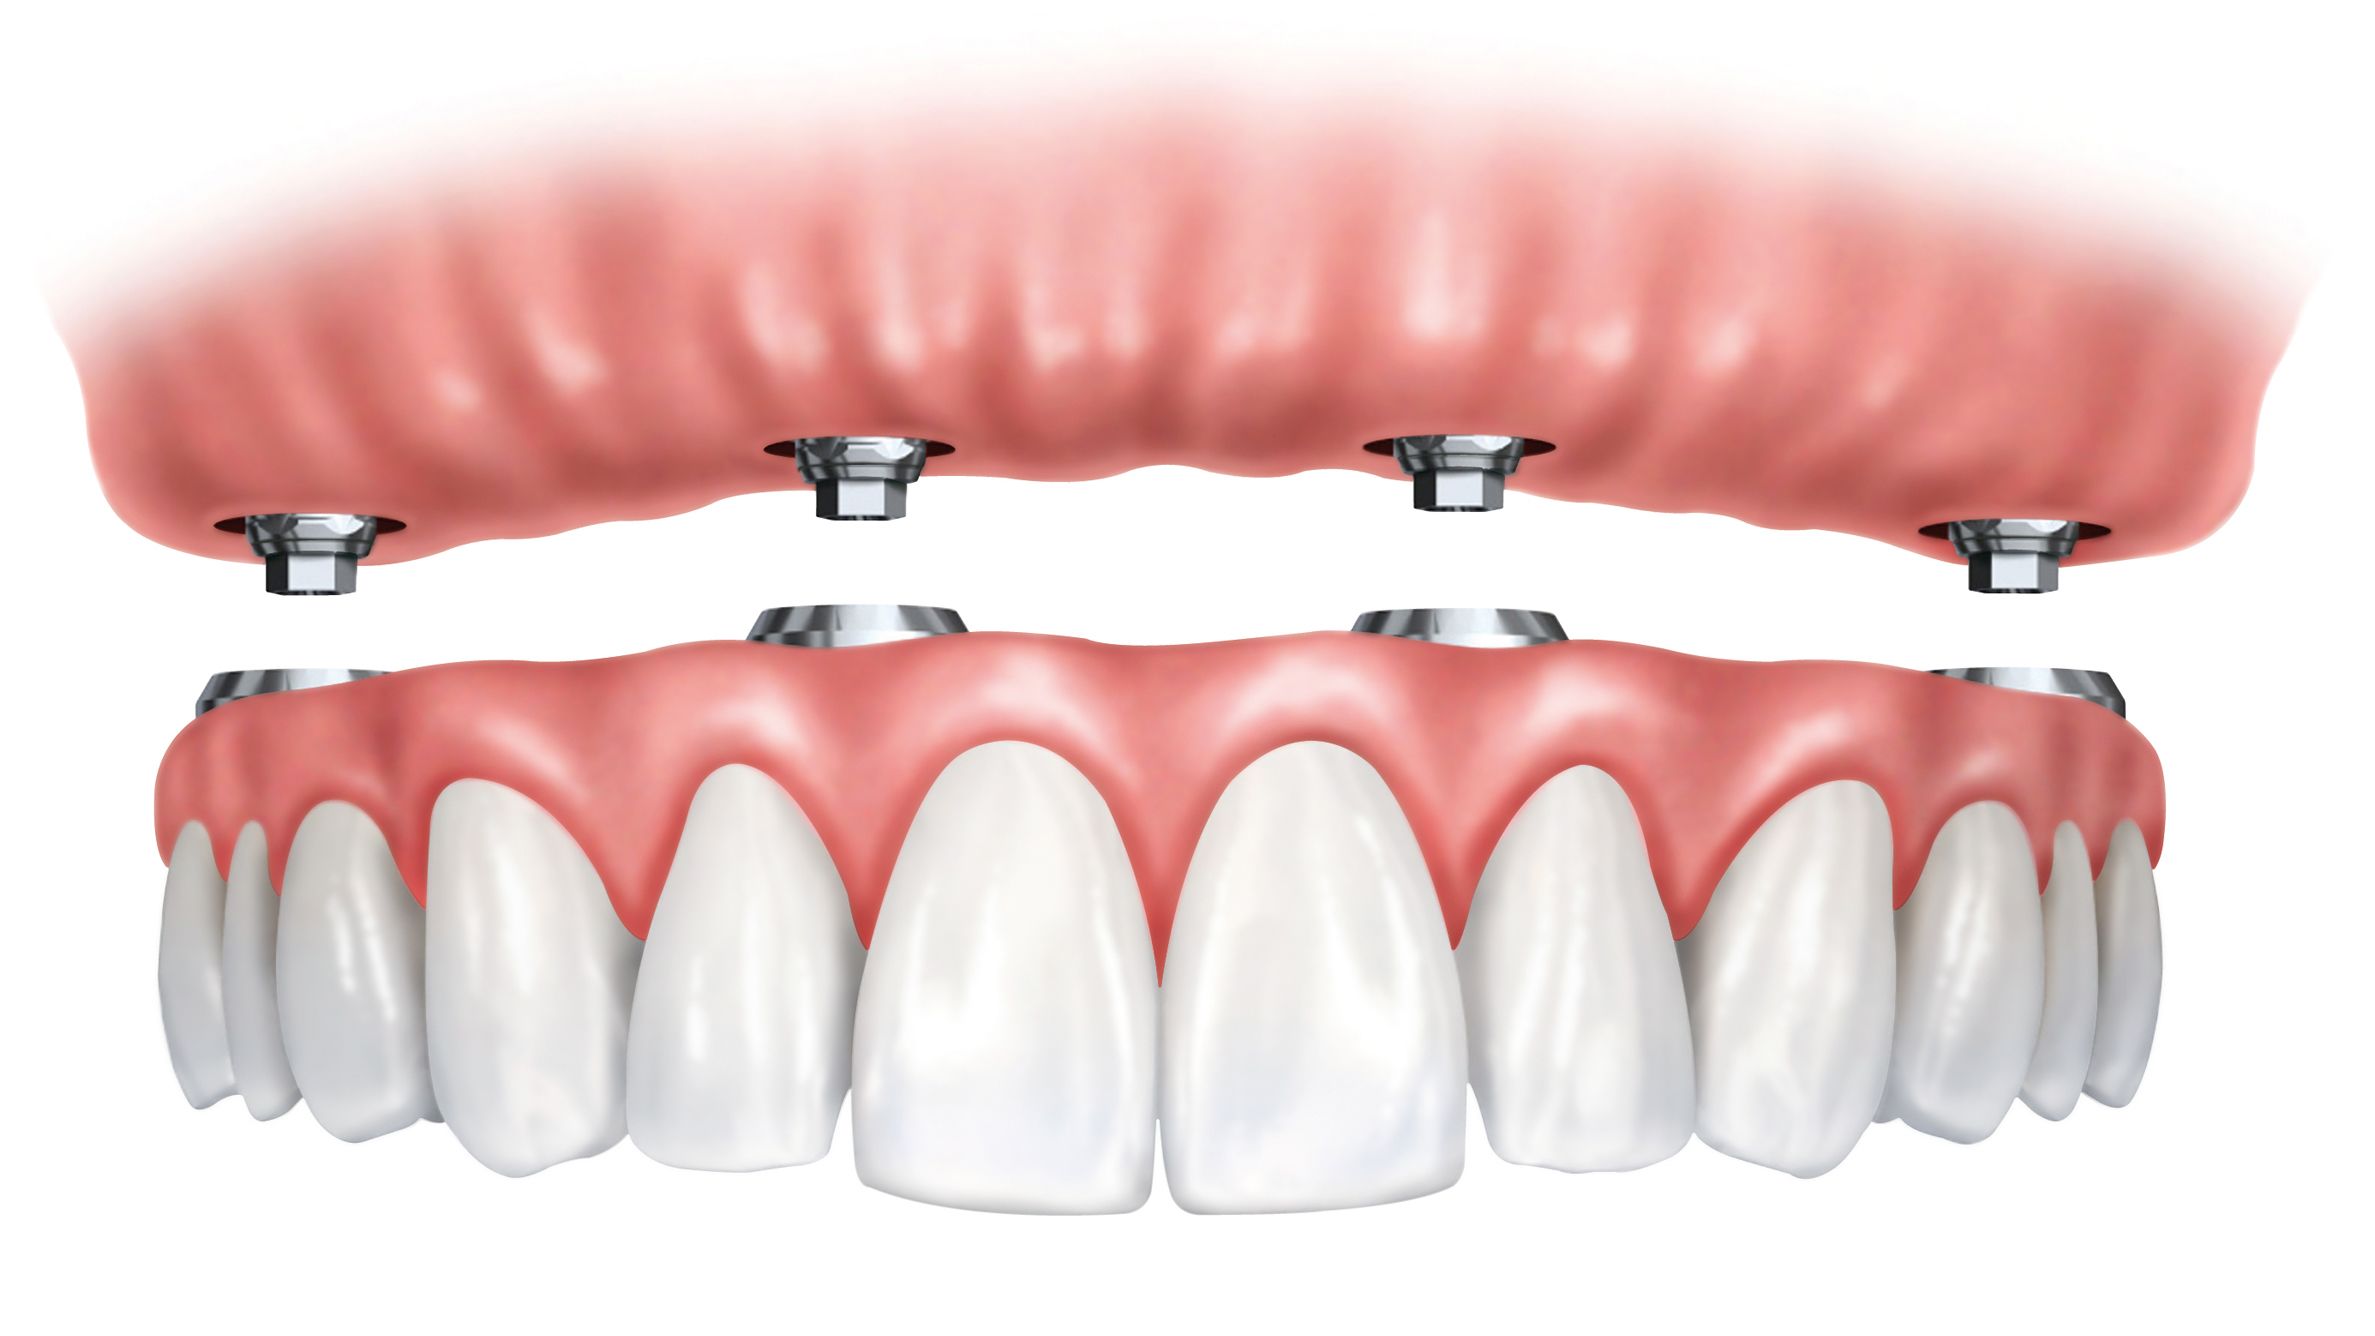 TeethSavers Full Arch Implant Rehabilitation per Arch